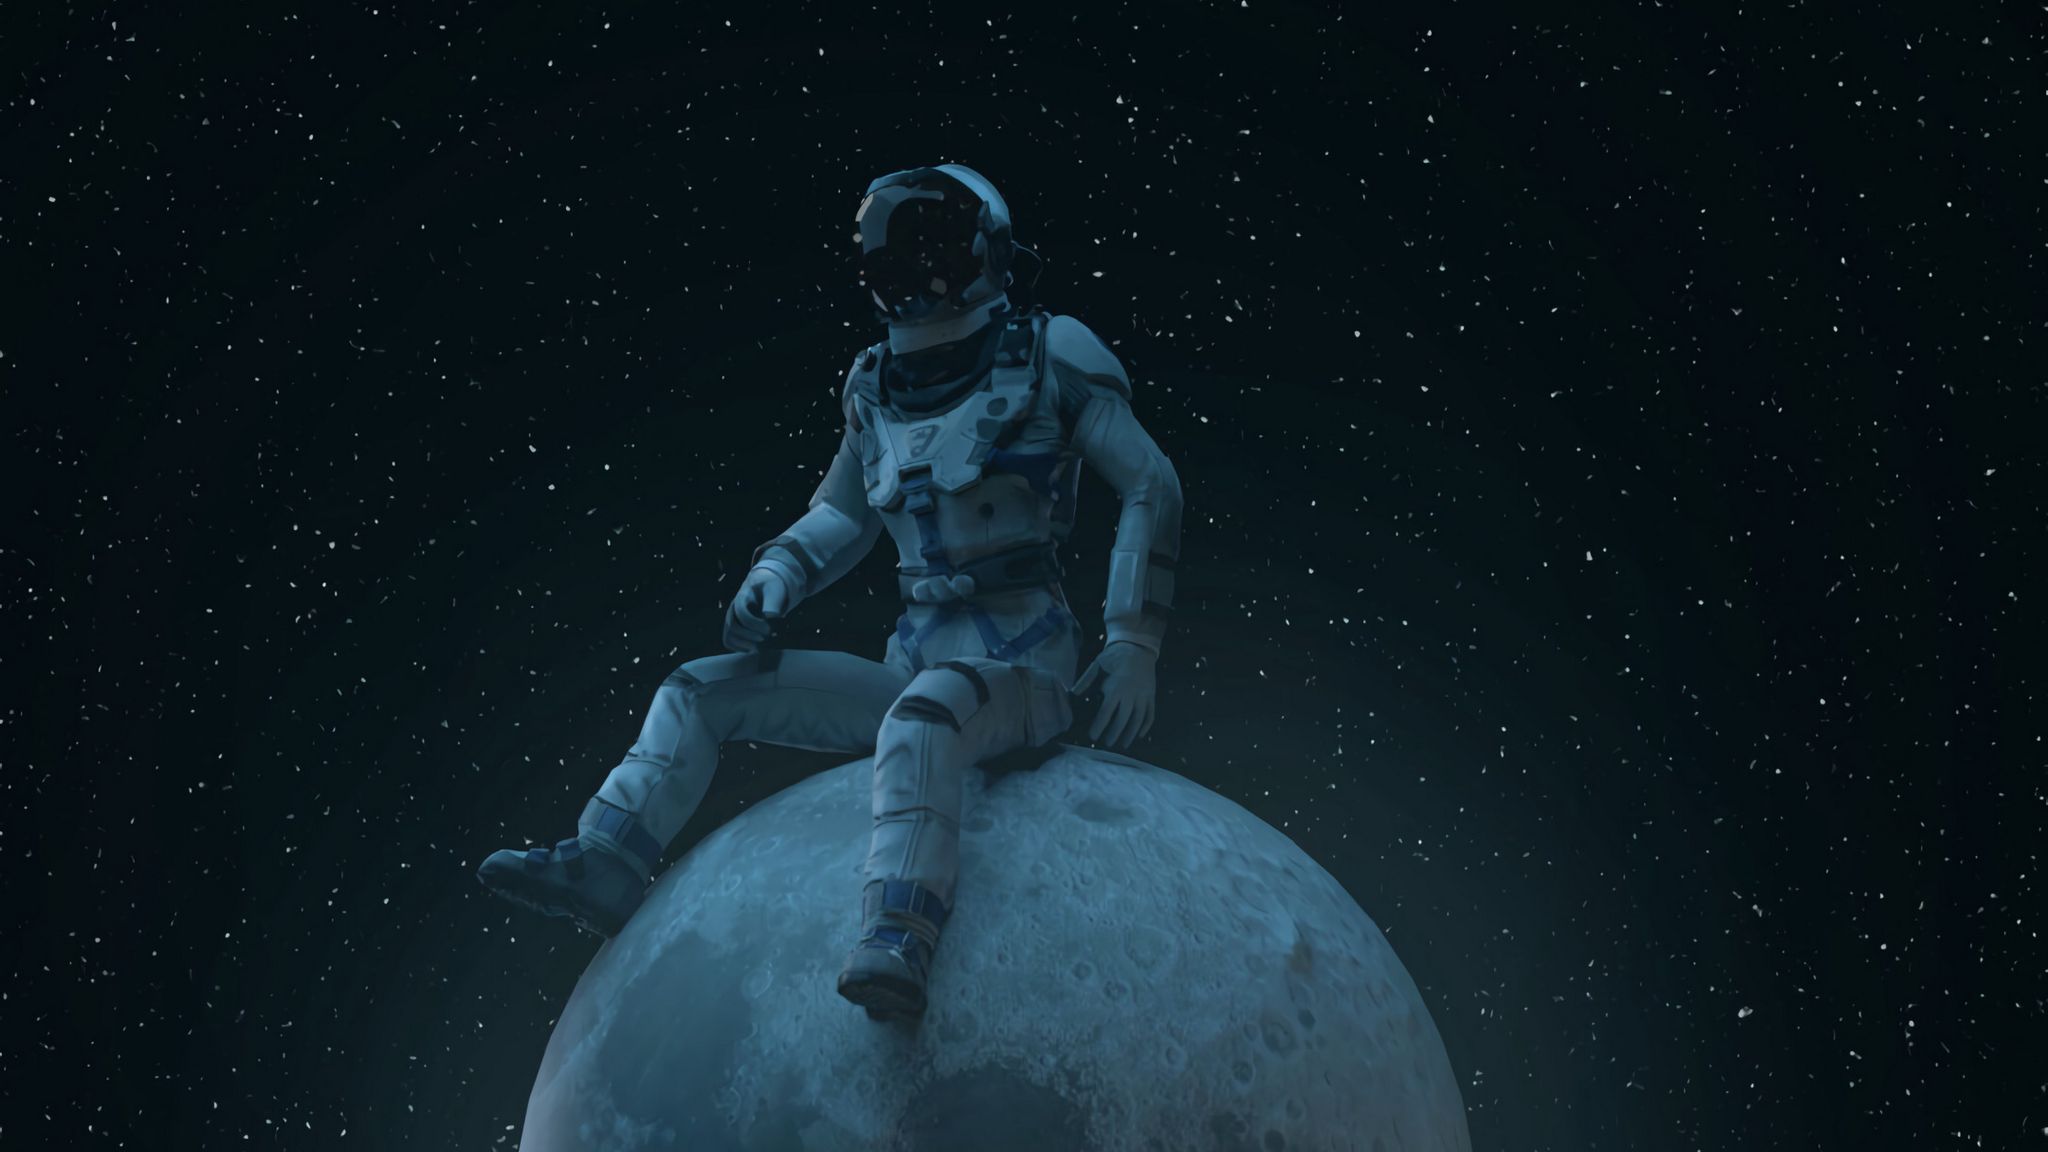 Wallpaper Astronaut on the moon